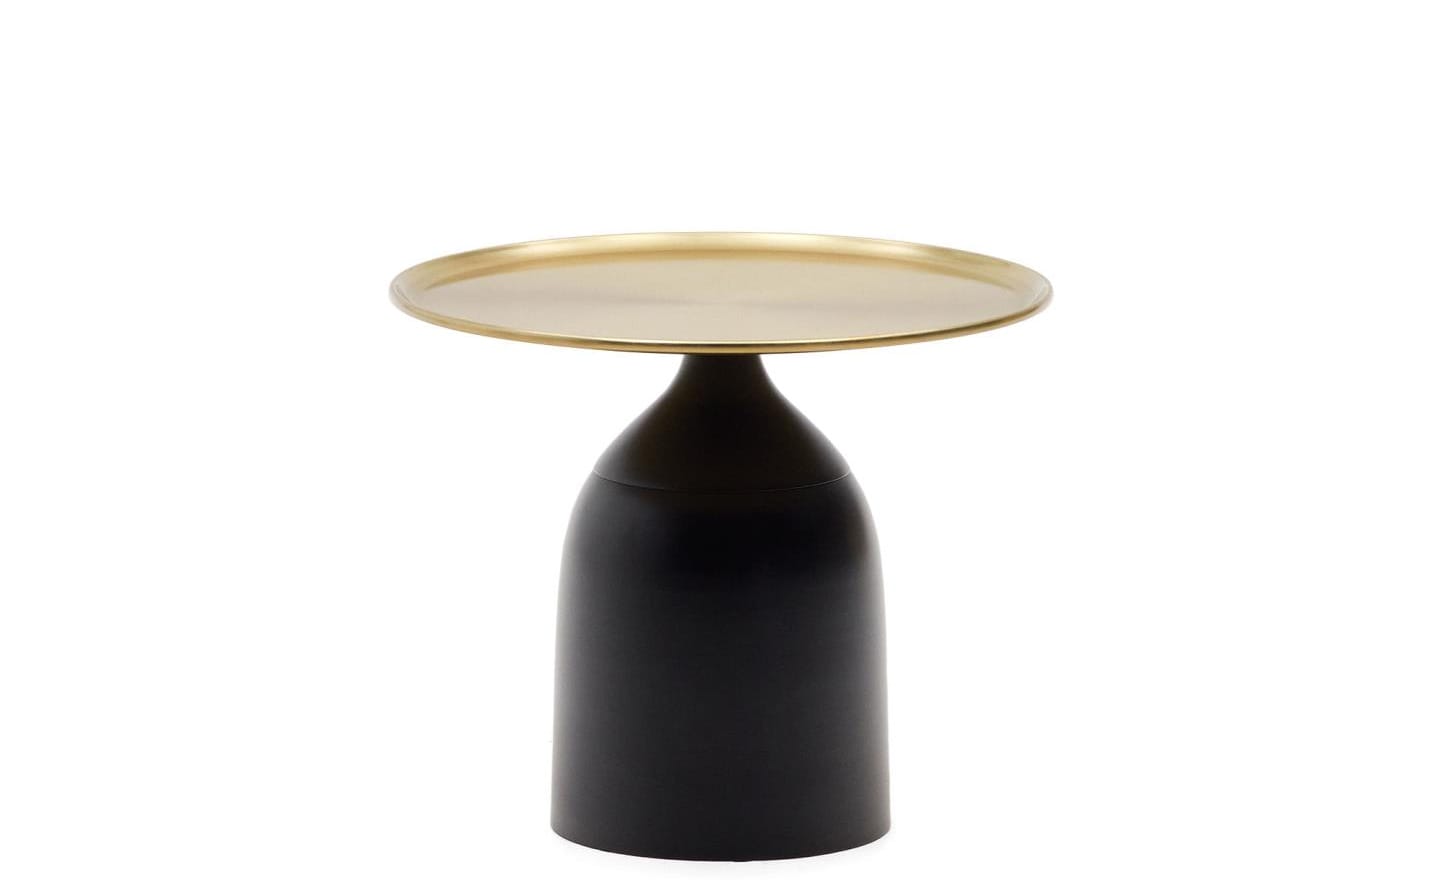 Mesa de Apoio Liuva, metal dourado e preto, design escultural geométrico, tendência contemporânea em mobiliário, proteções de feltro para o chão.